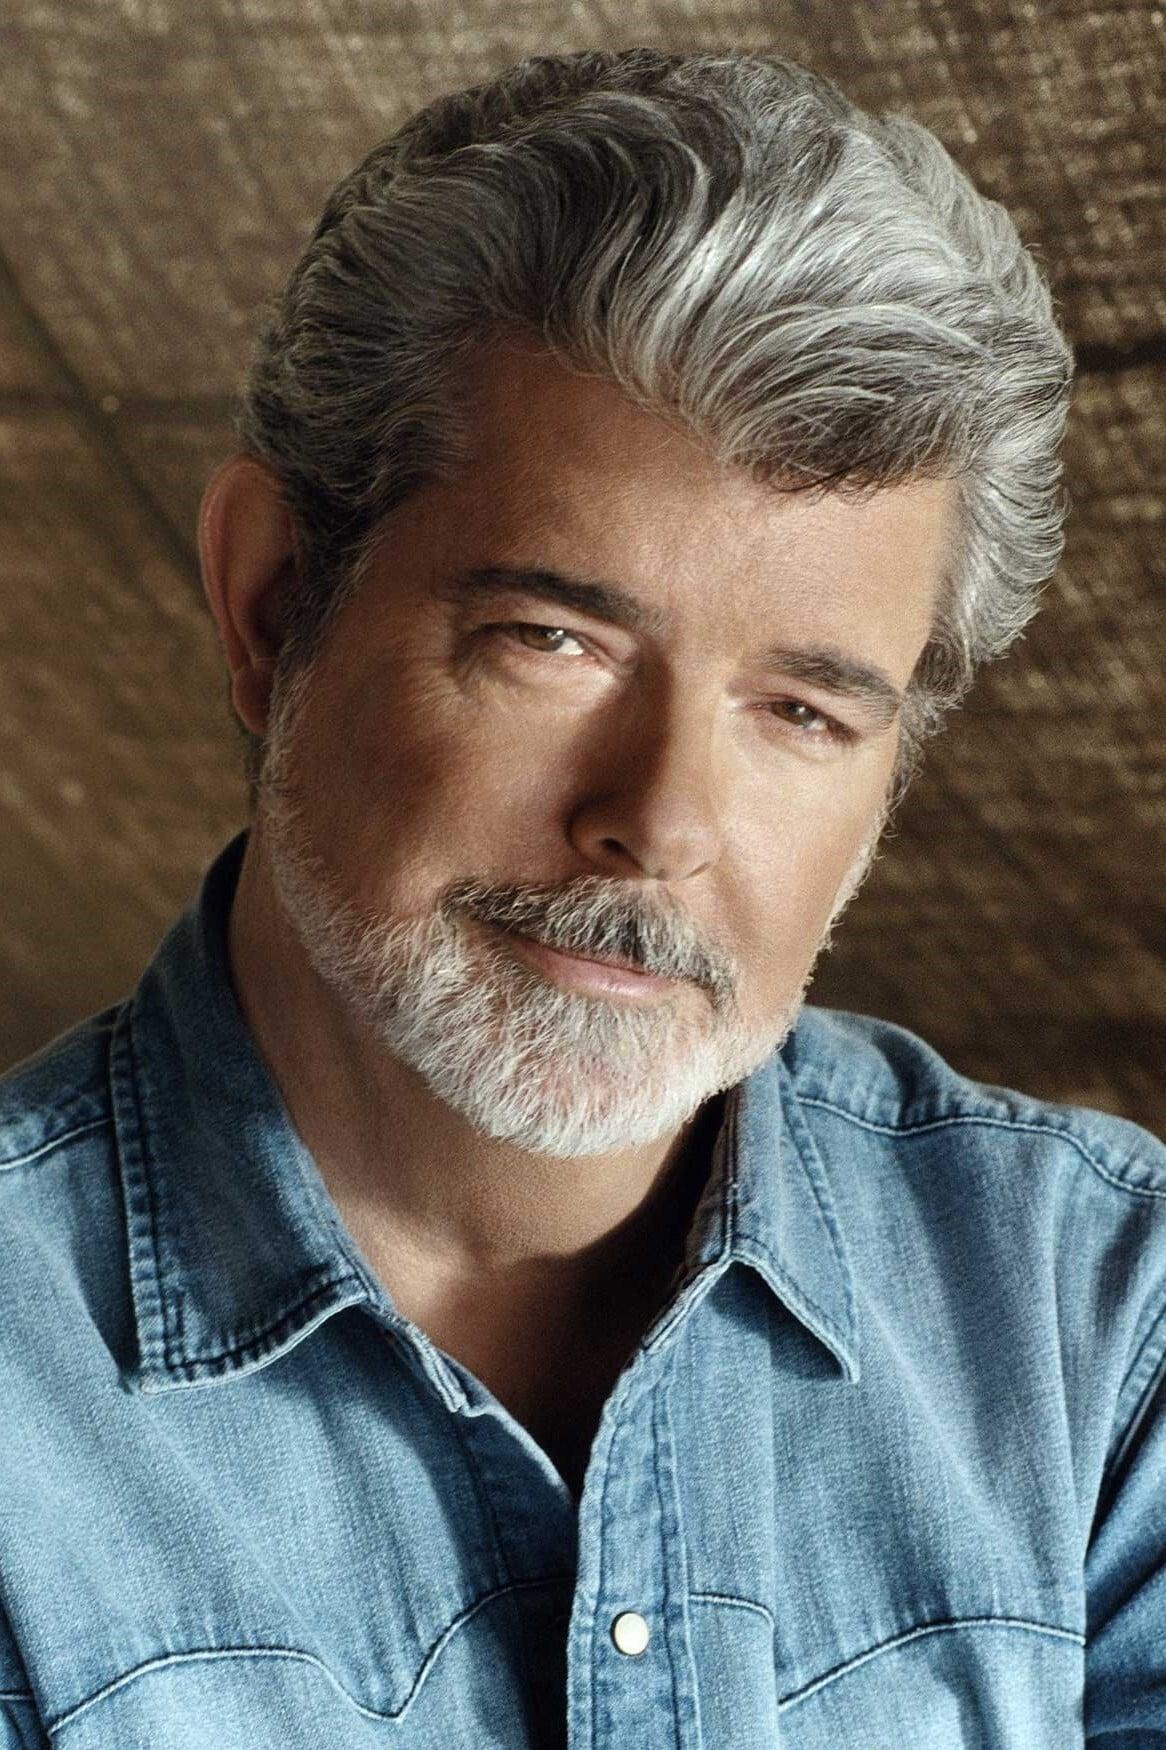 George Lucas | Self